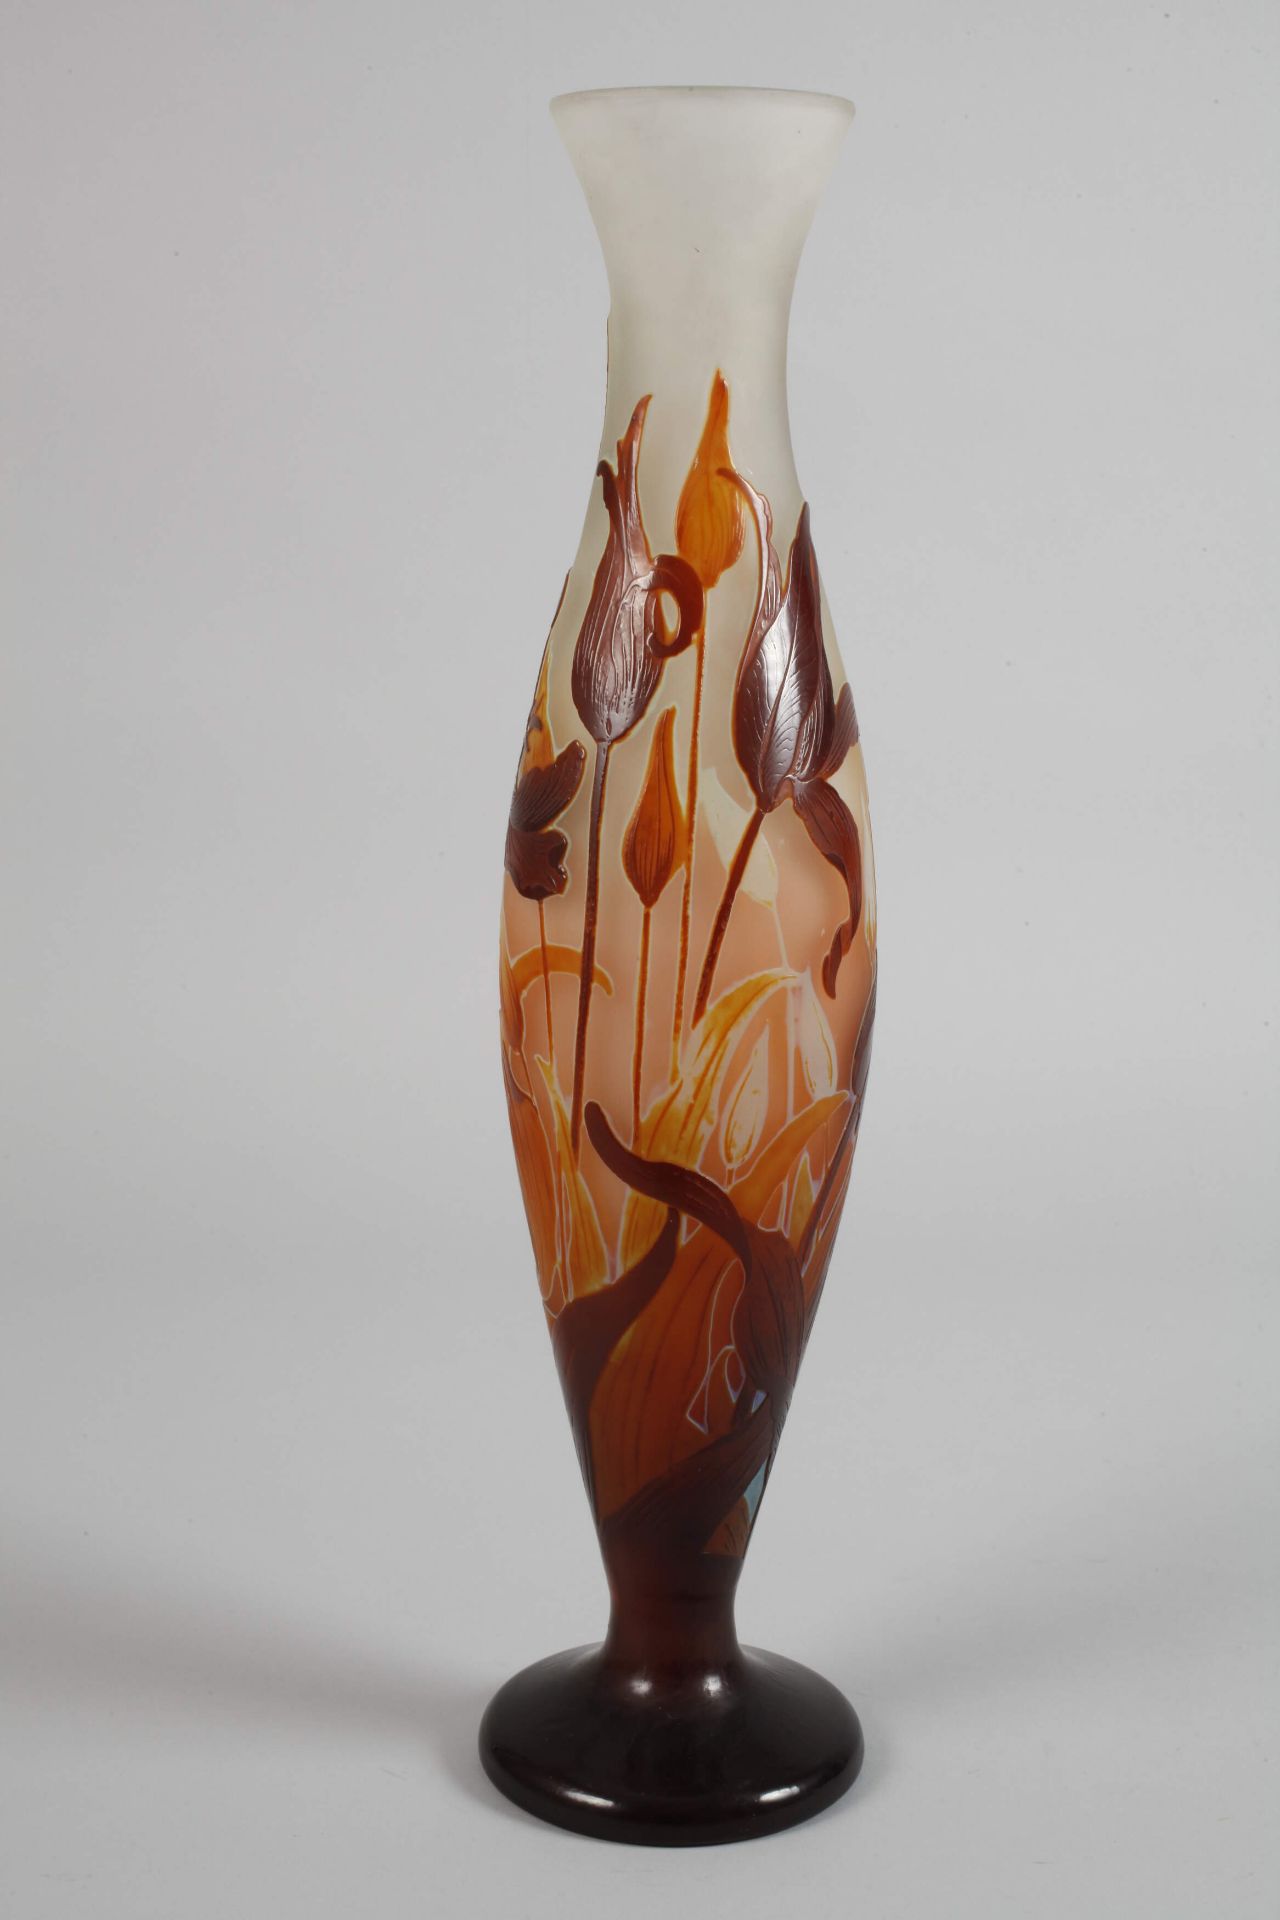 Large Émile Gallé vase - Image 2 of 5